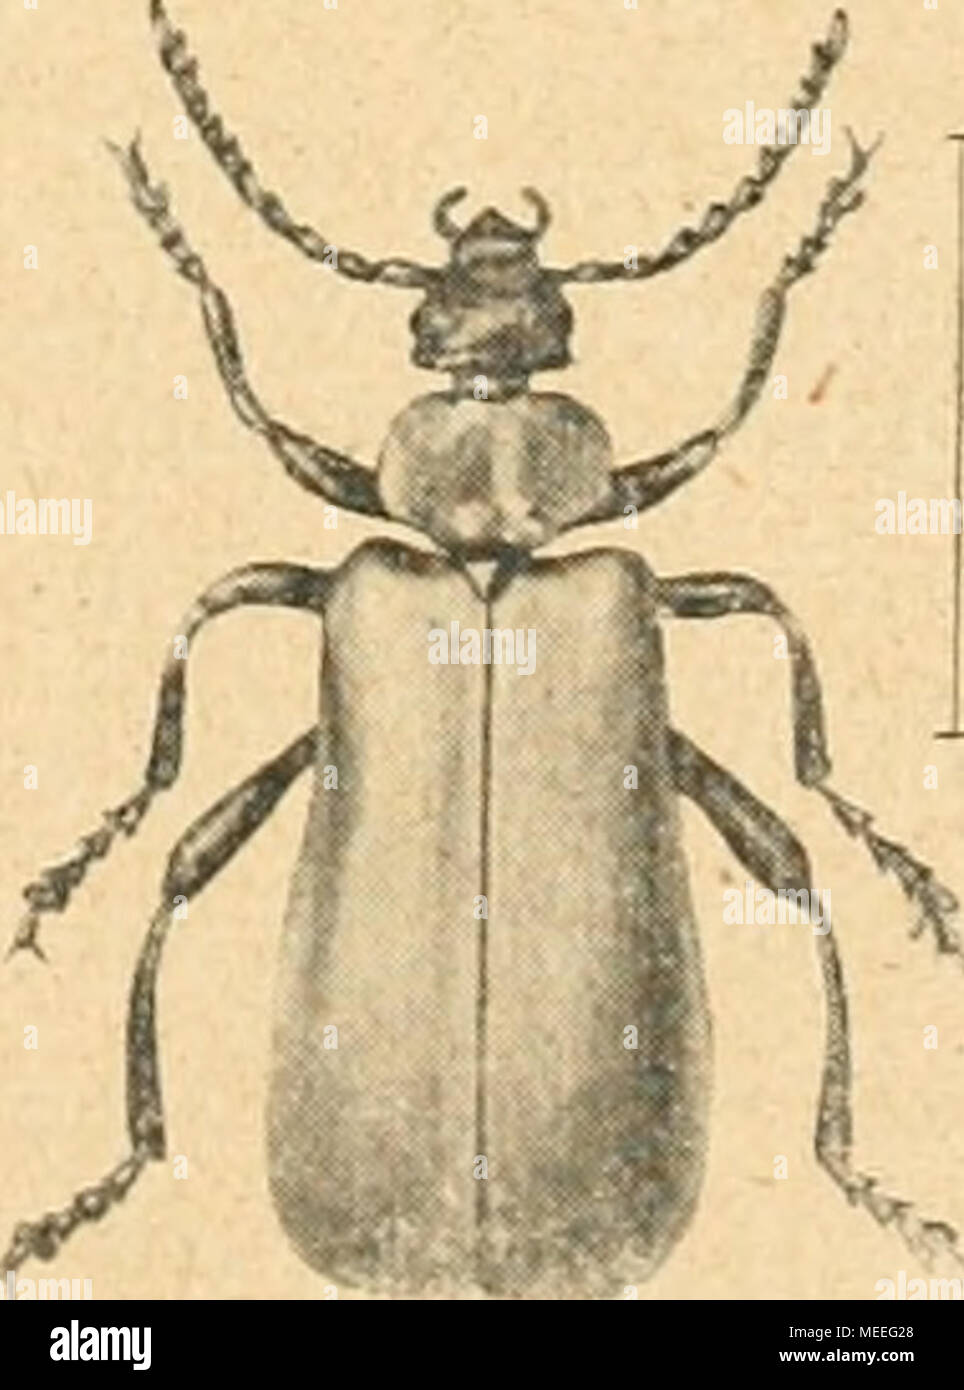 . Die forstinsekten Mitteleuropas. Ein lehr- und handbuch . Cr J Abb. 94. Verschiedene Heteromeren. A Phyto depressus L., B Lissoderma 4-pustulatum Mrsh., C Rhinosimus ruficollis L. (Pythide), D Tomoxia biguttata Gyll. (Mordellide), E Calopus serraticornis L. (Oedemeride), F Helops lanipes L., G Hypophloeus fasciatus L. (Tenebrioniden), H Serropalpus barbatus Schall. (Melandryide), J Pyrochroa coccinea L. (Pyrochroide). — Original. 13* Stock Photo